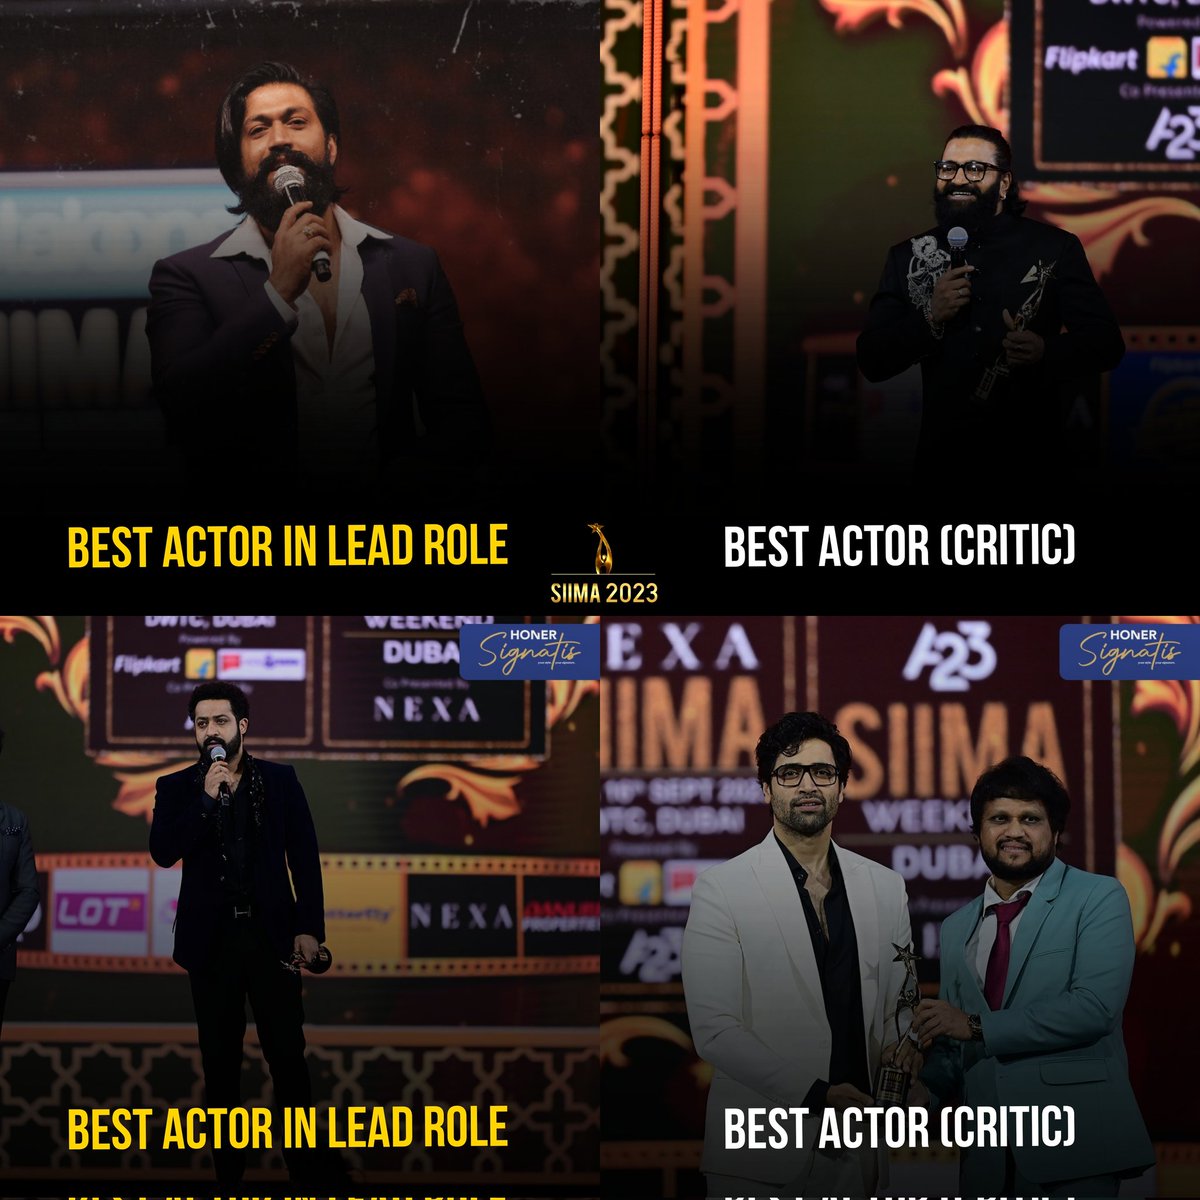 Deserves for Best Actor From Respective Industry 🔥

#YashBOSS for #KGF2
#JrNTR for #RRRMovie 
#RishabShetty for #Kantara
#AdiviShesh for #Major

#SIIMA2023 #SIIMAinDubai 
#Yash19 #Devara